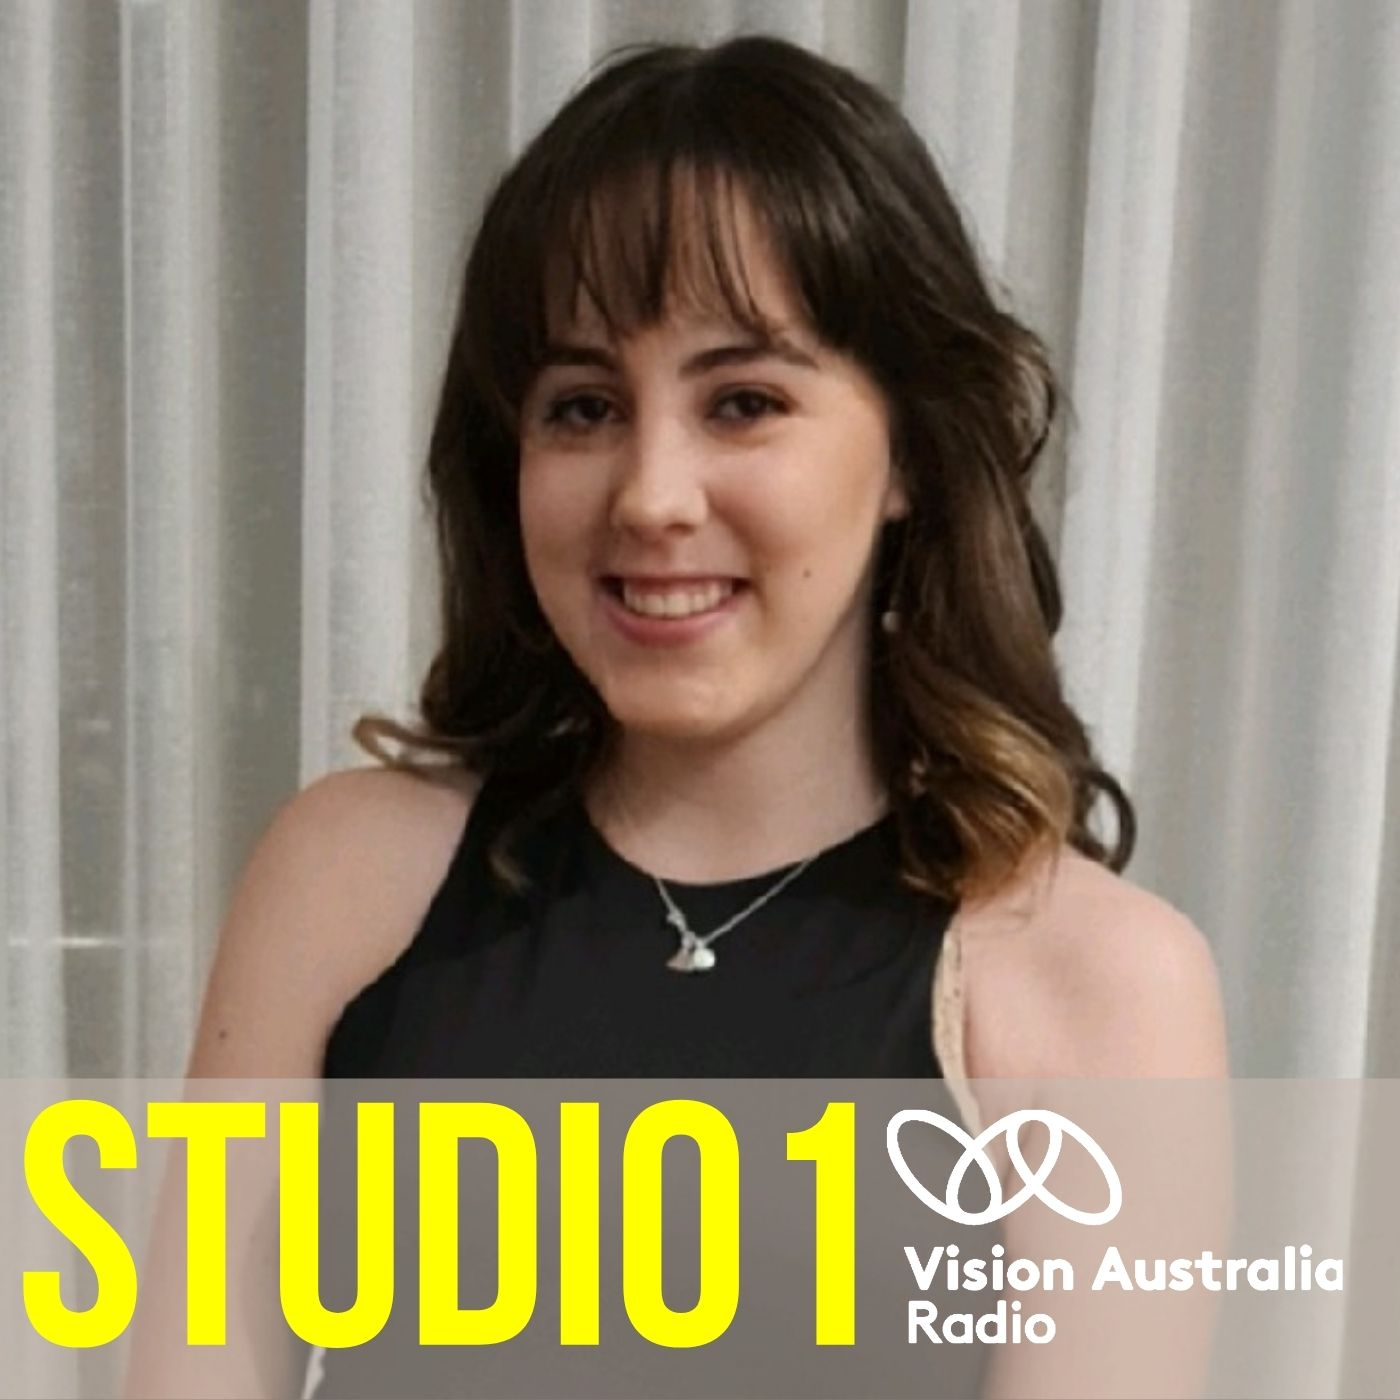 The Vision Australia Career Start Program